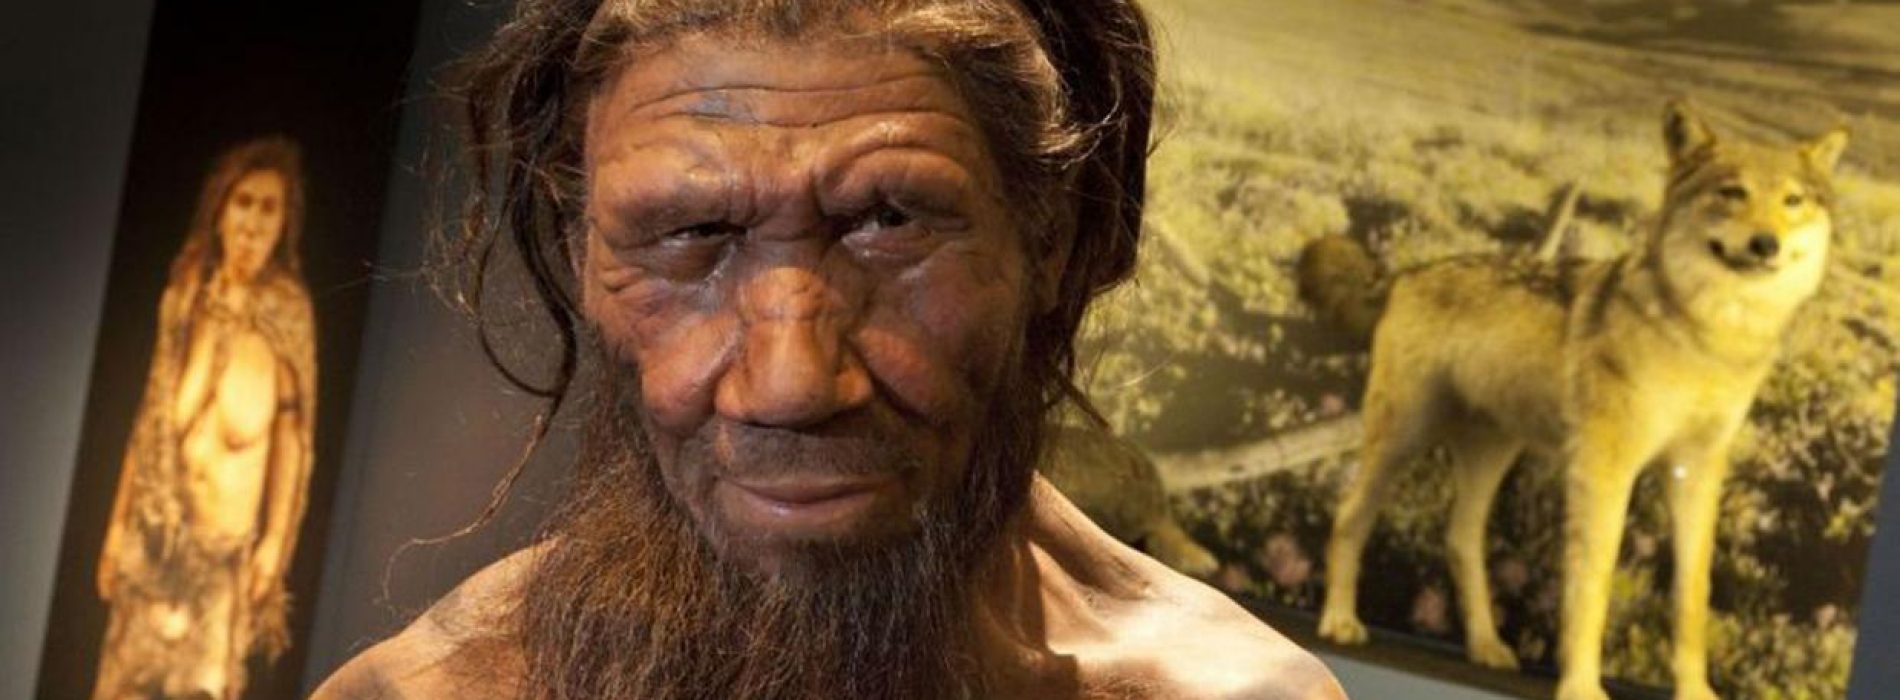 Neanderthalers gebruikten 50.000 jaar geleden al plantaardige penicilline en aspirine als medicijn